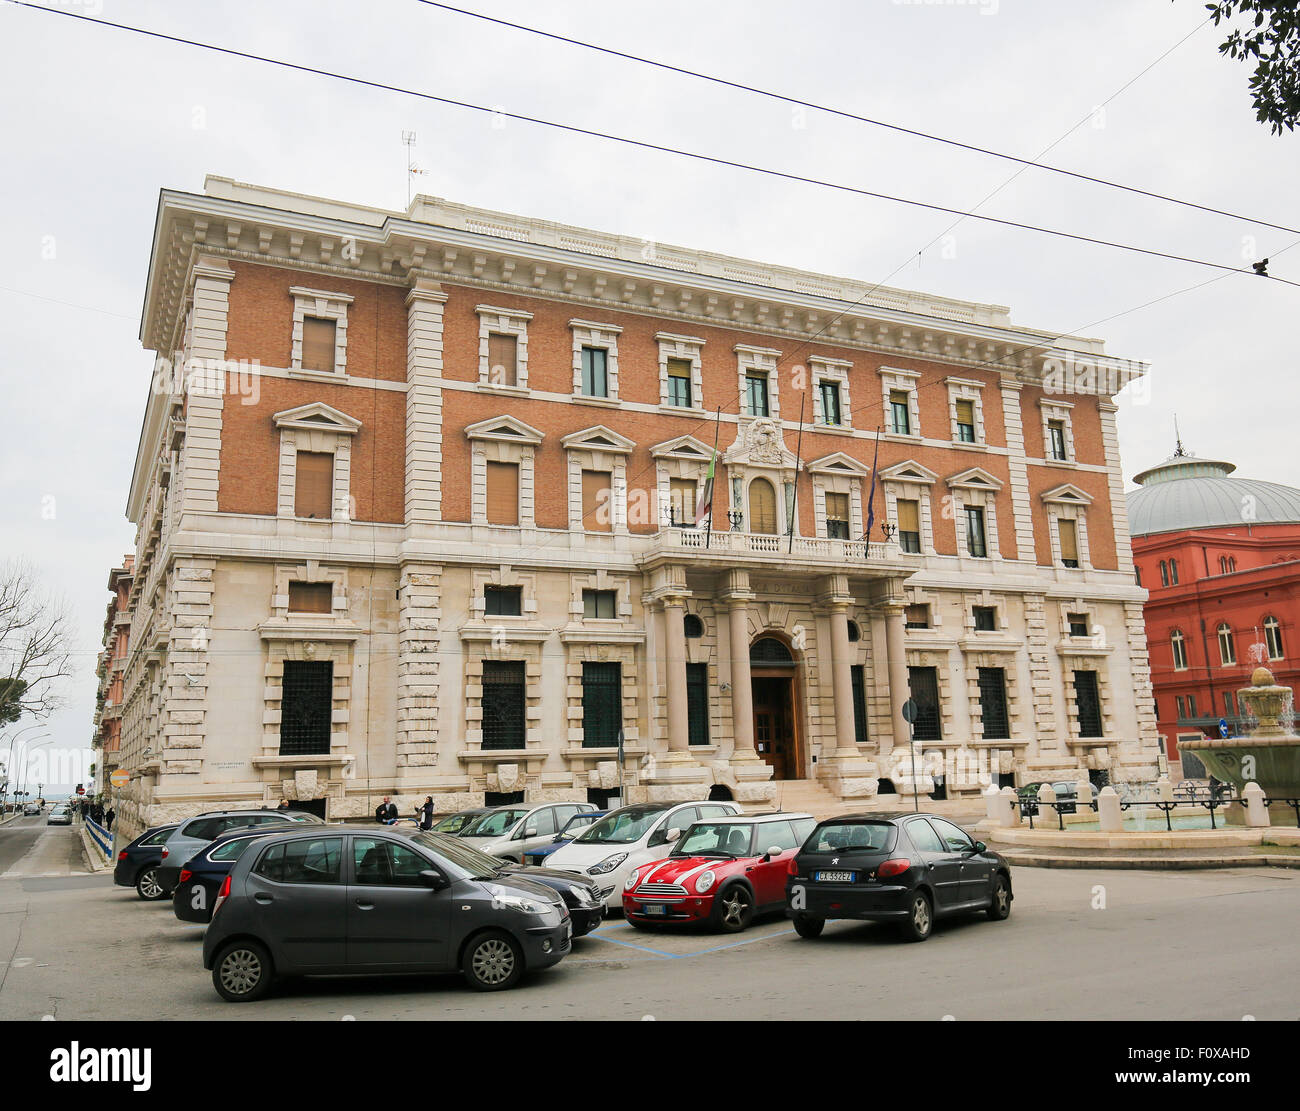 BARI, ITALIE - 16 mars 2015 : Bâtiment de la Banque Nationale Banque d'Italie dans le centre de Bari, Italie Banque D'Images